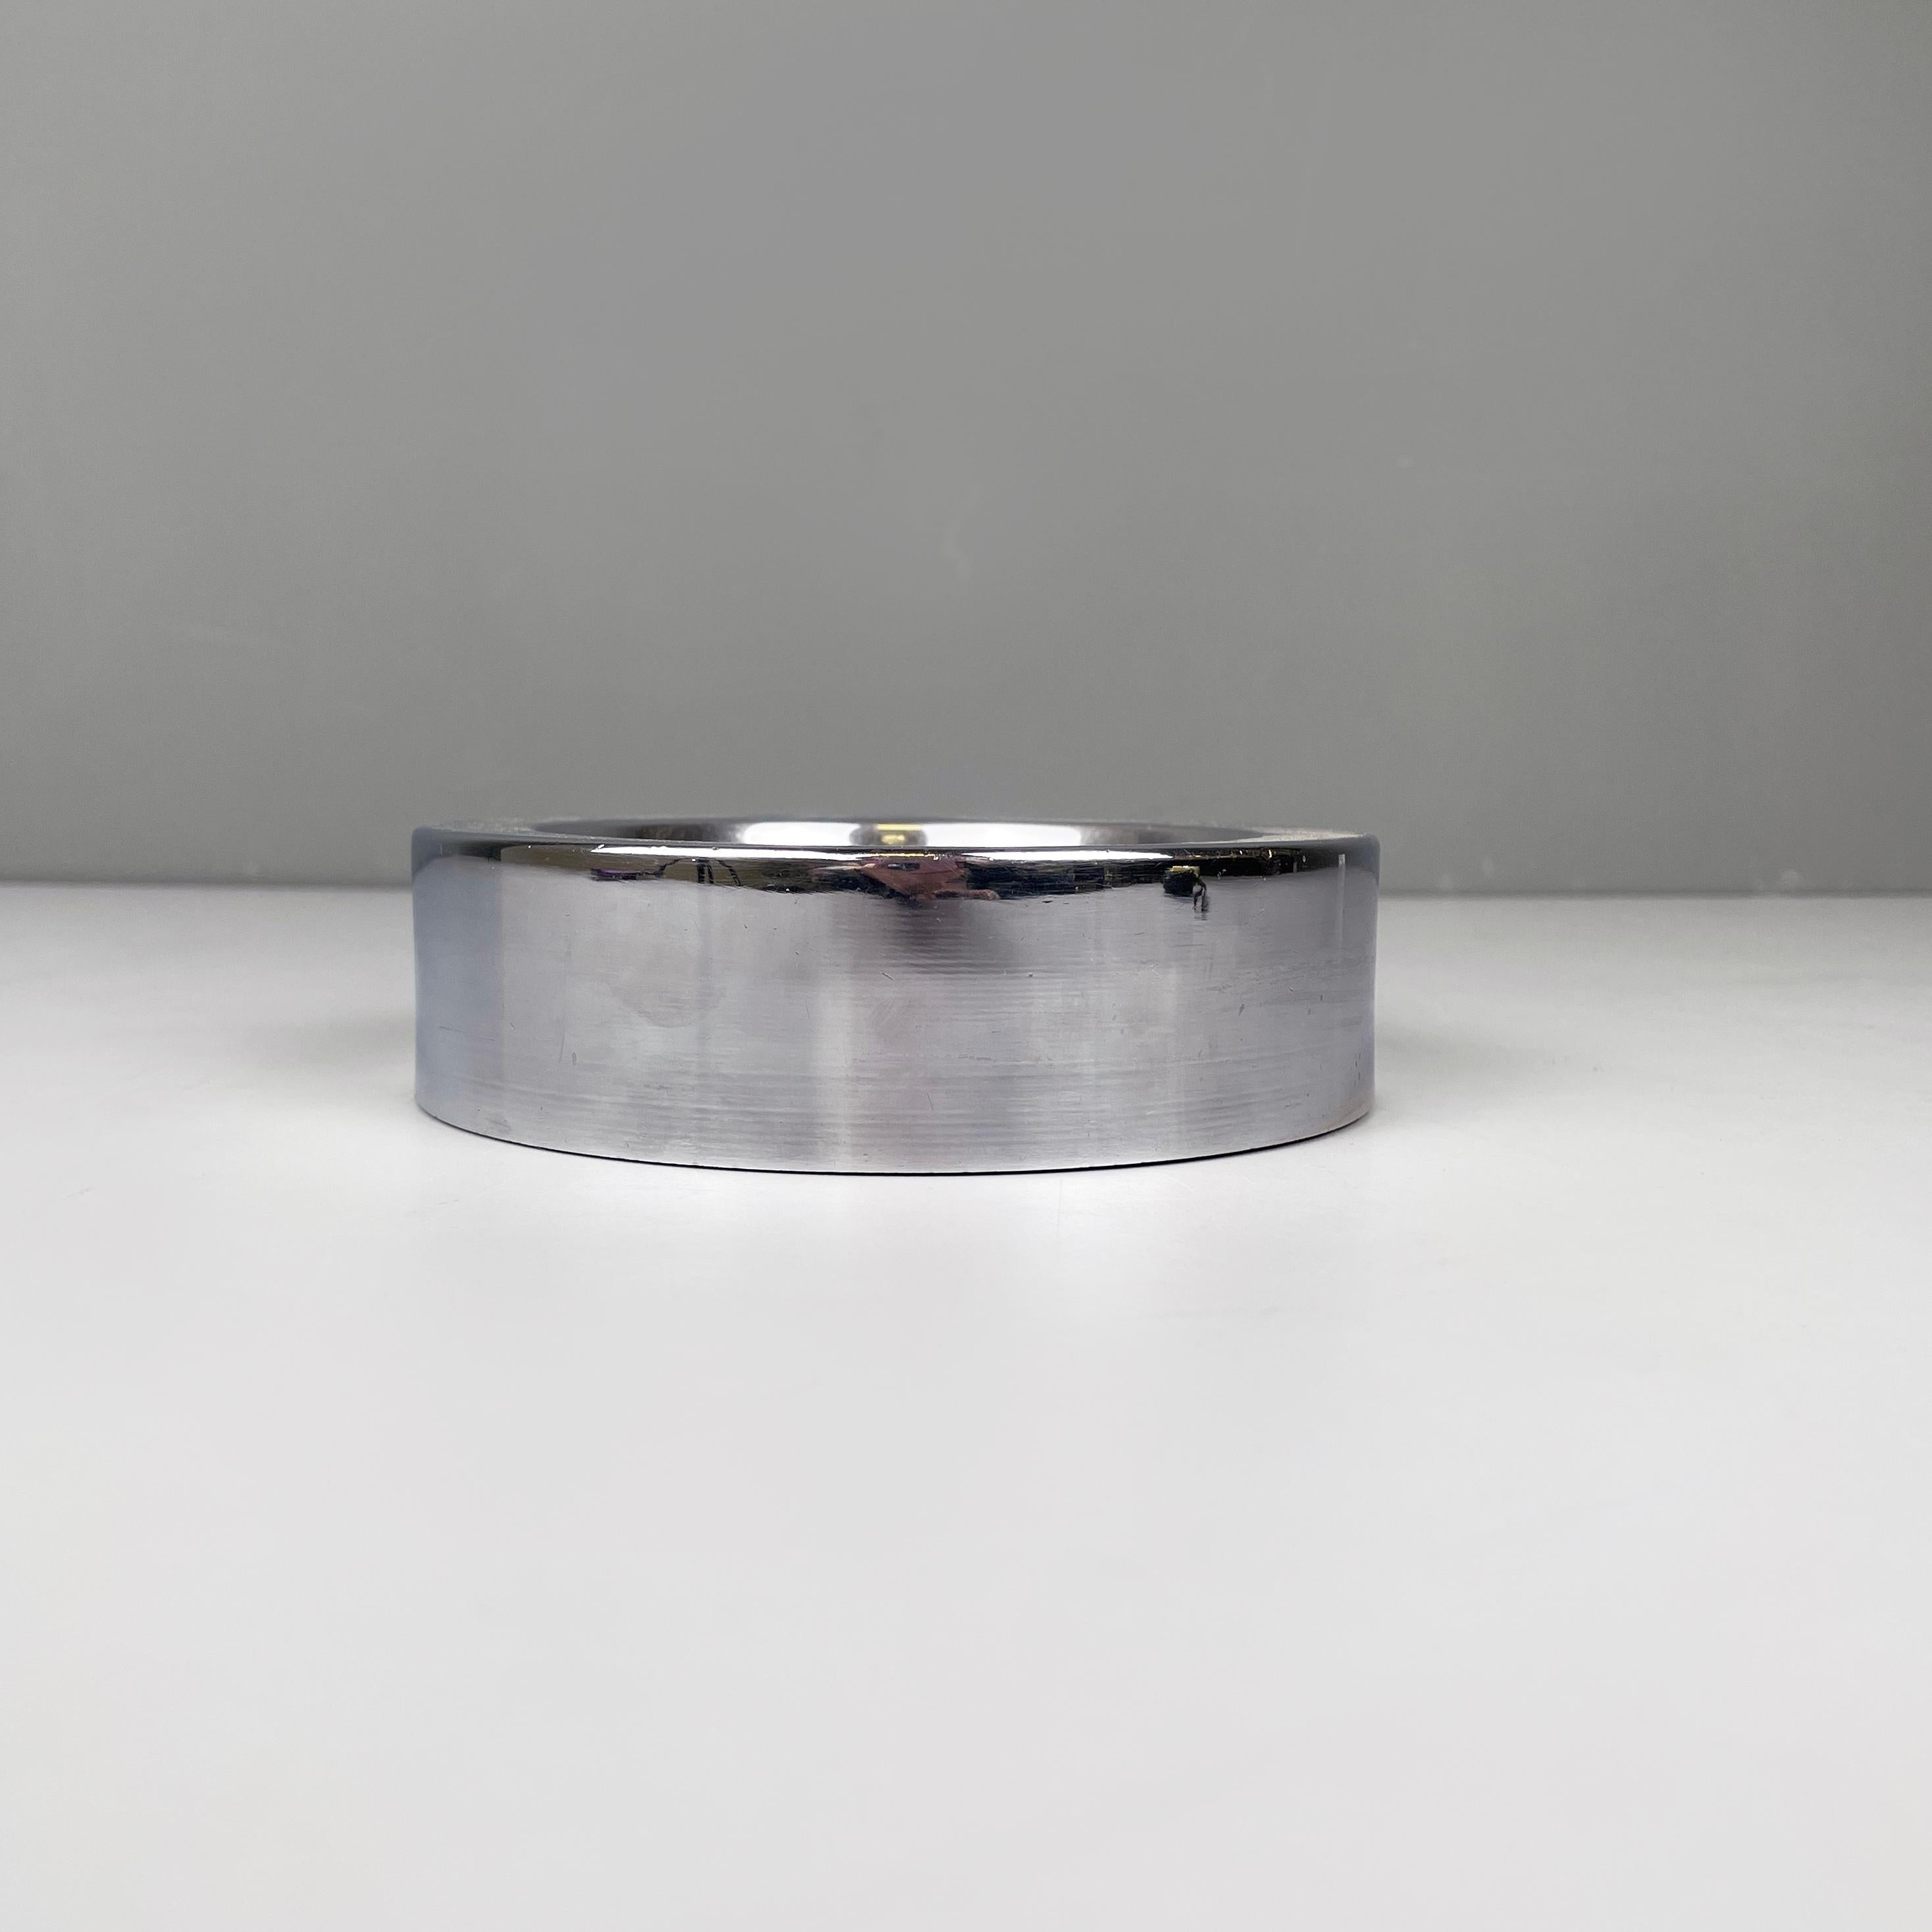 Cendrier de table ronde moderne italien en acier par Dada International Design, années 1980
Cendrier de table rond en acier. Le plat central se termine par un bord épais.
Il a été produit par Dada International Design dans les années 1980.
Bon état,